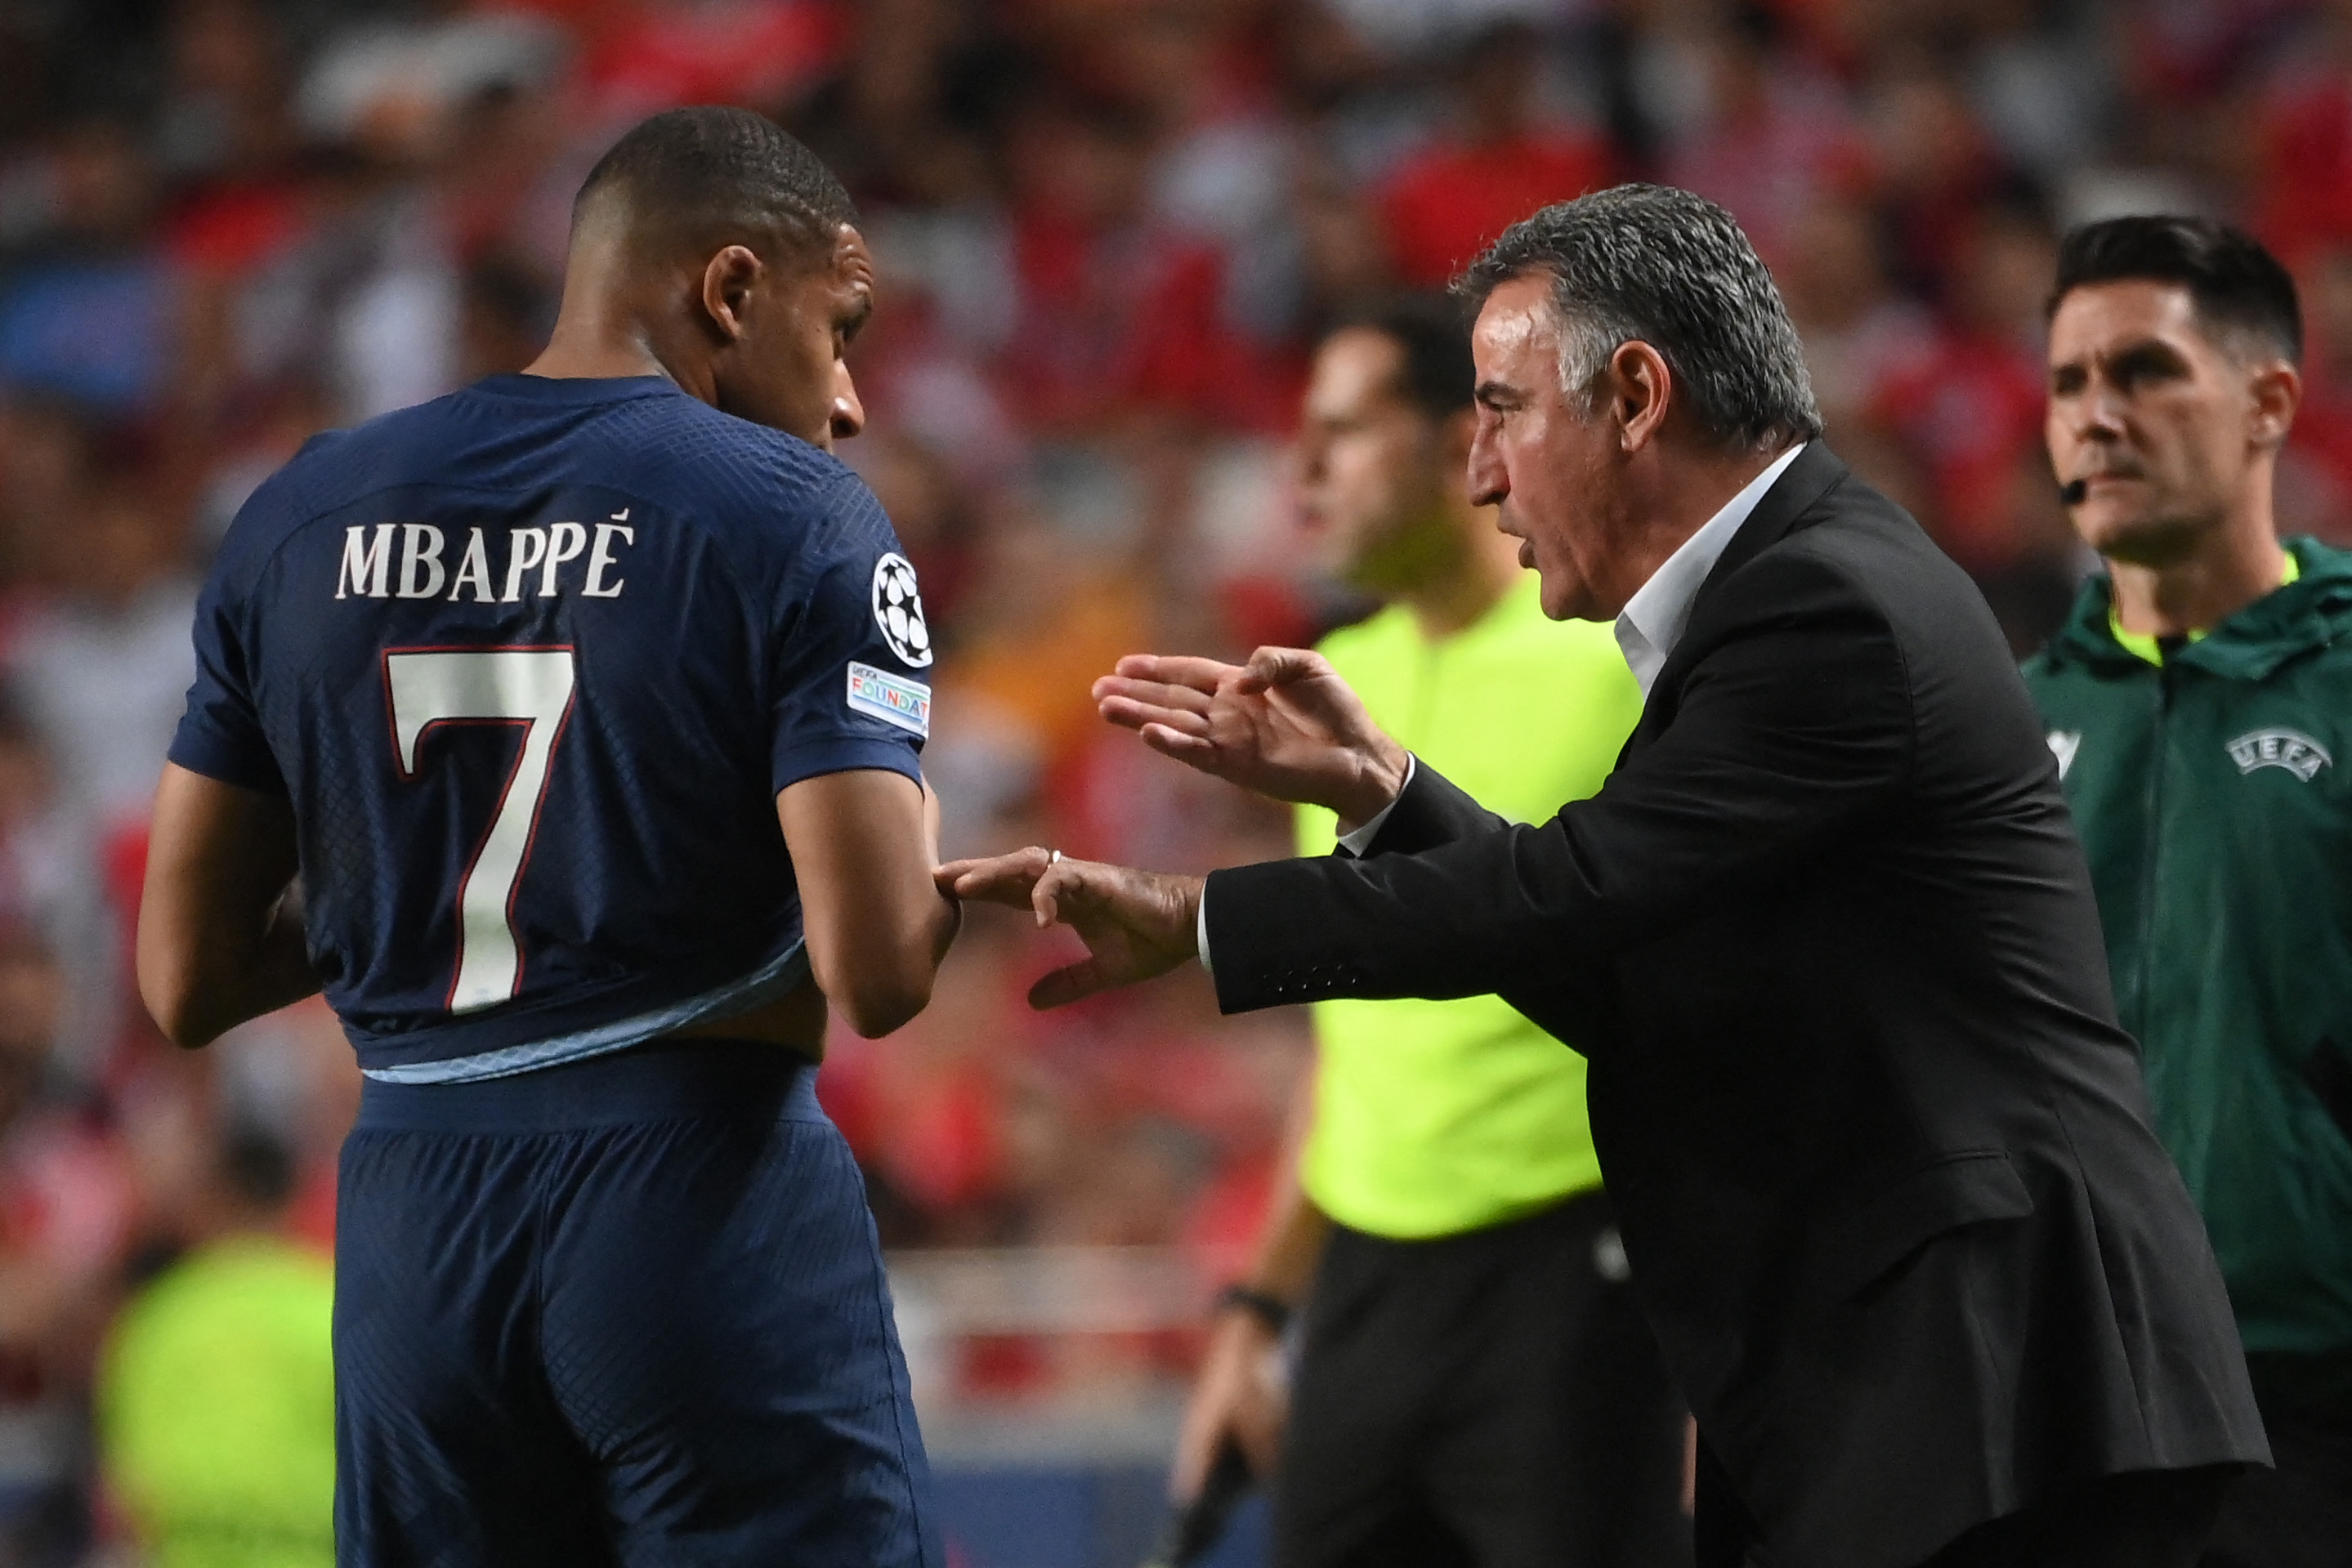 PSG : Mbappé, encore une poignée de records de buts à aller chercher - Le  Parisien